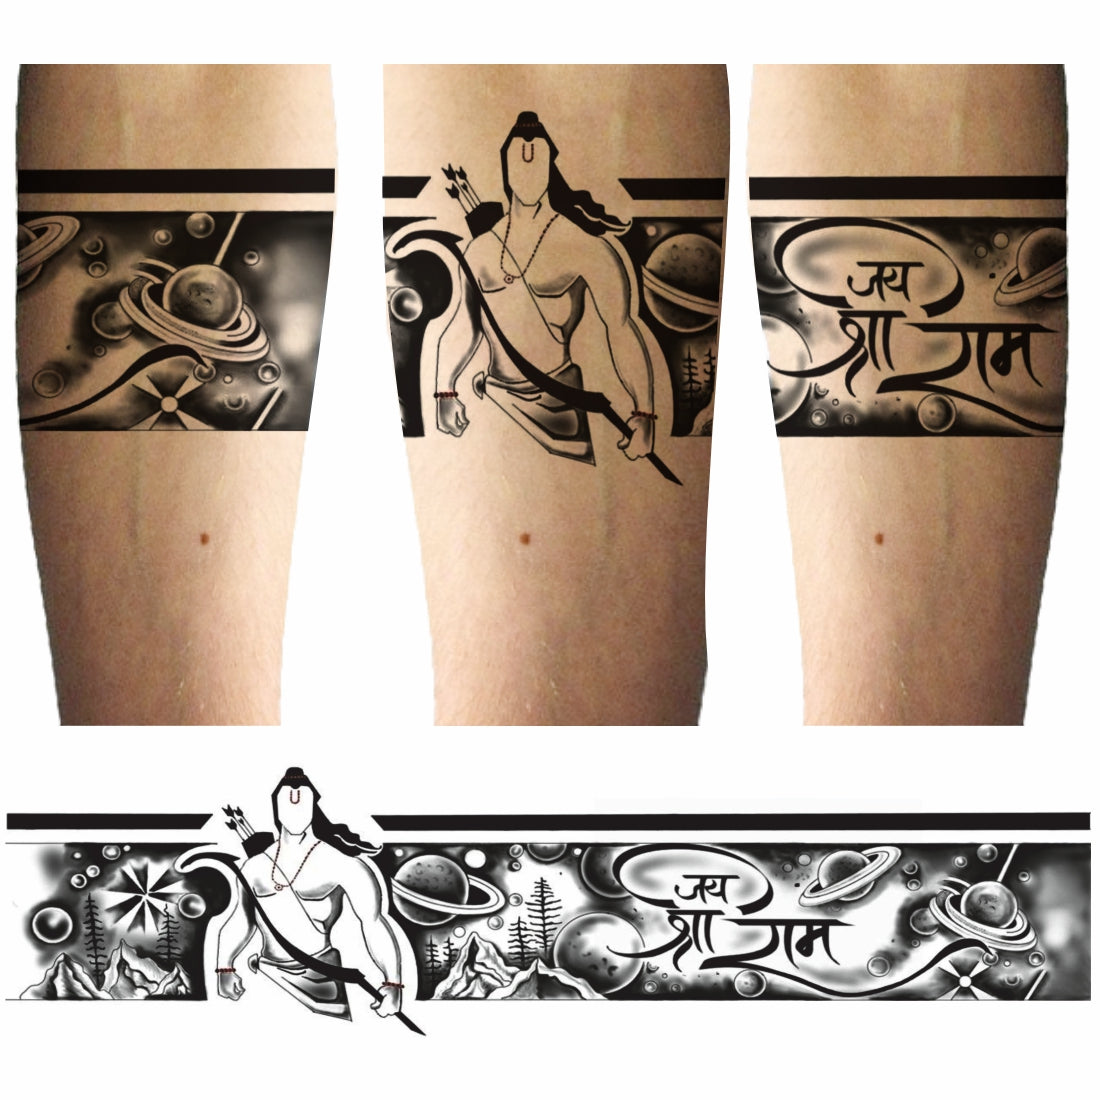 hanuman ji tattoo |Hanuman tattoo |Bajrangbali tattoo |Hanuman ji nu tattoo  | Arm tattoos for guys, Tattoos for guys, Body art tattoos